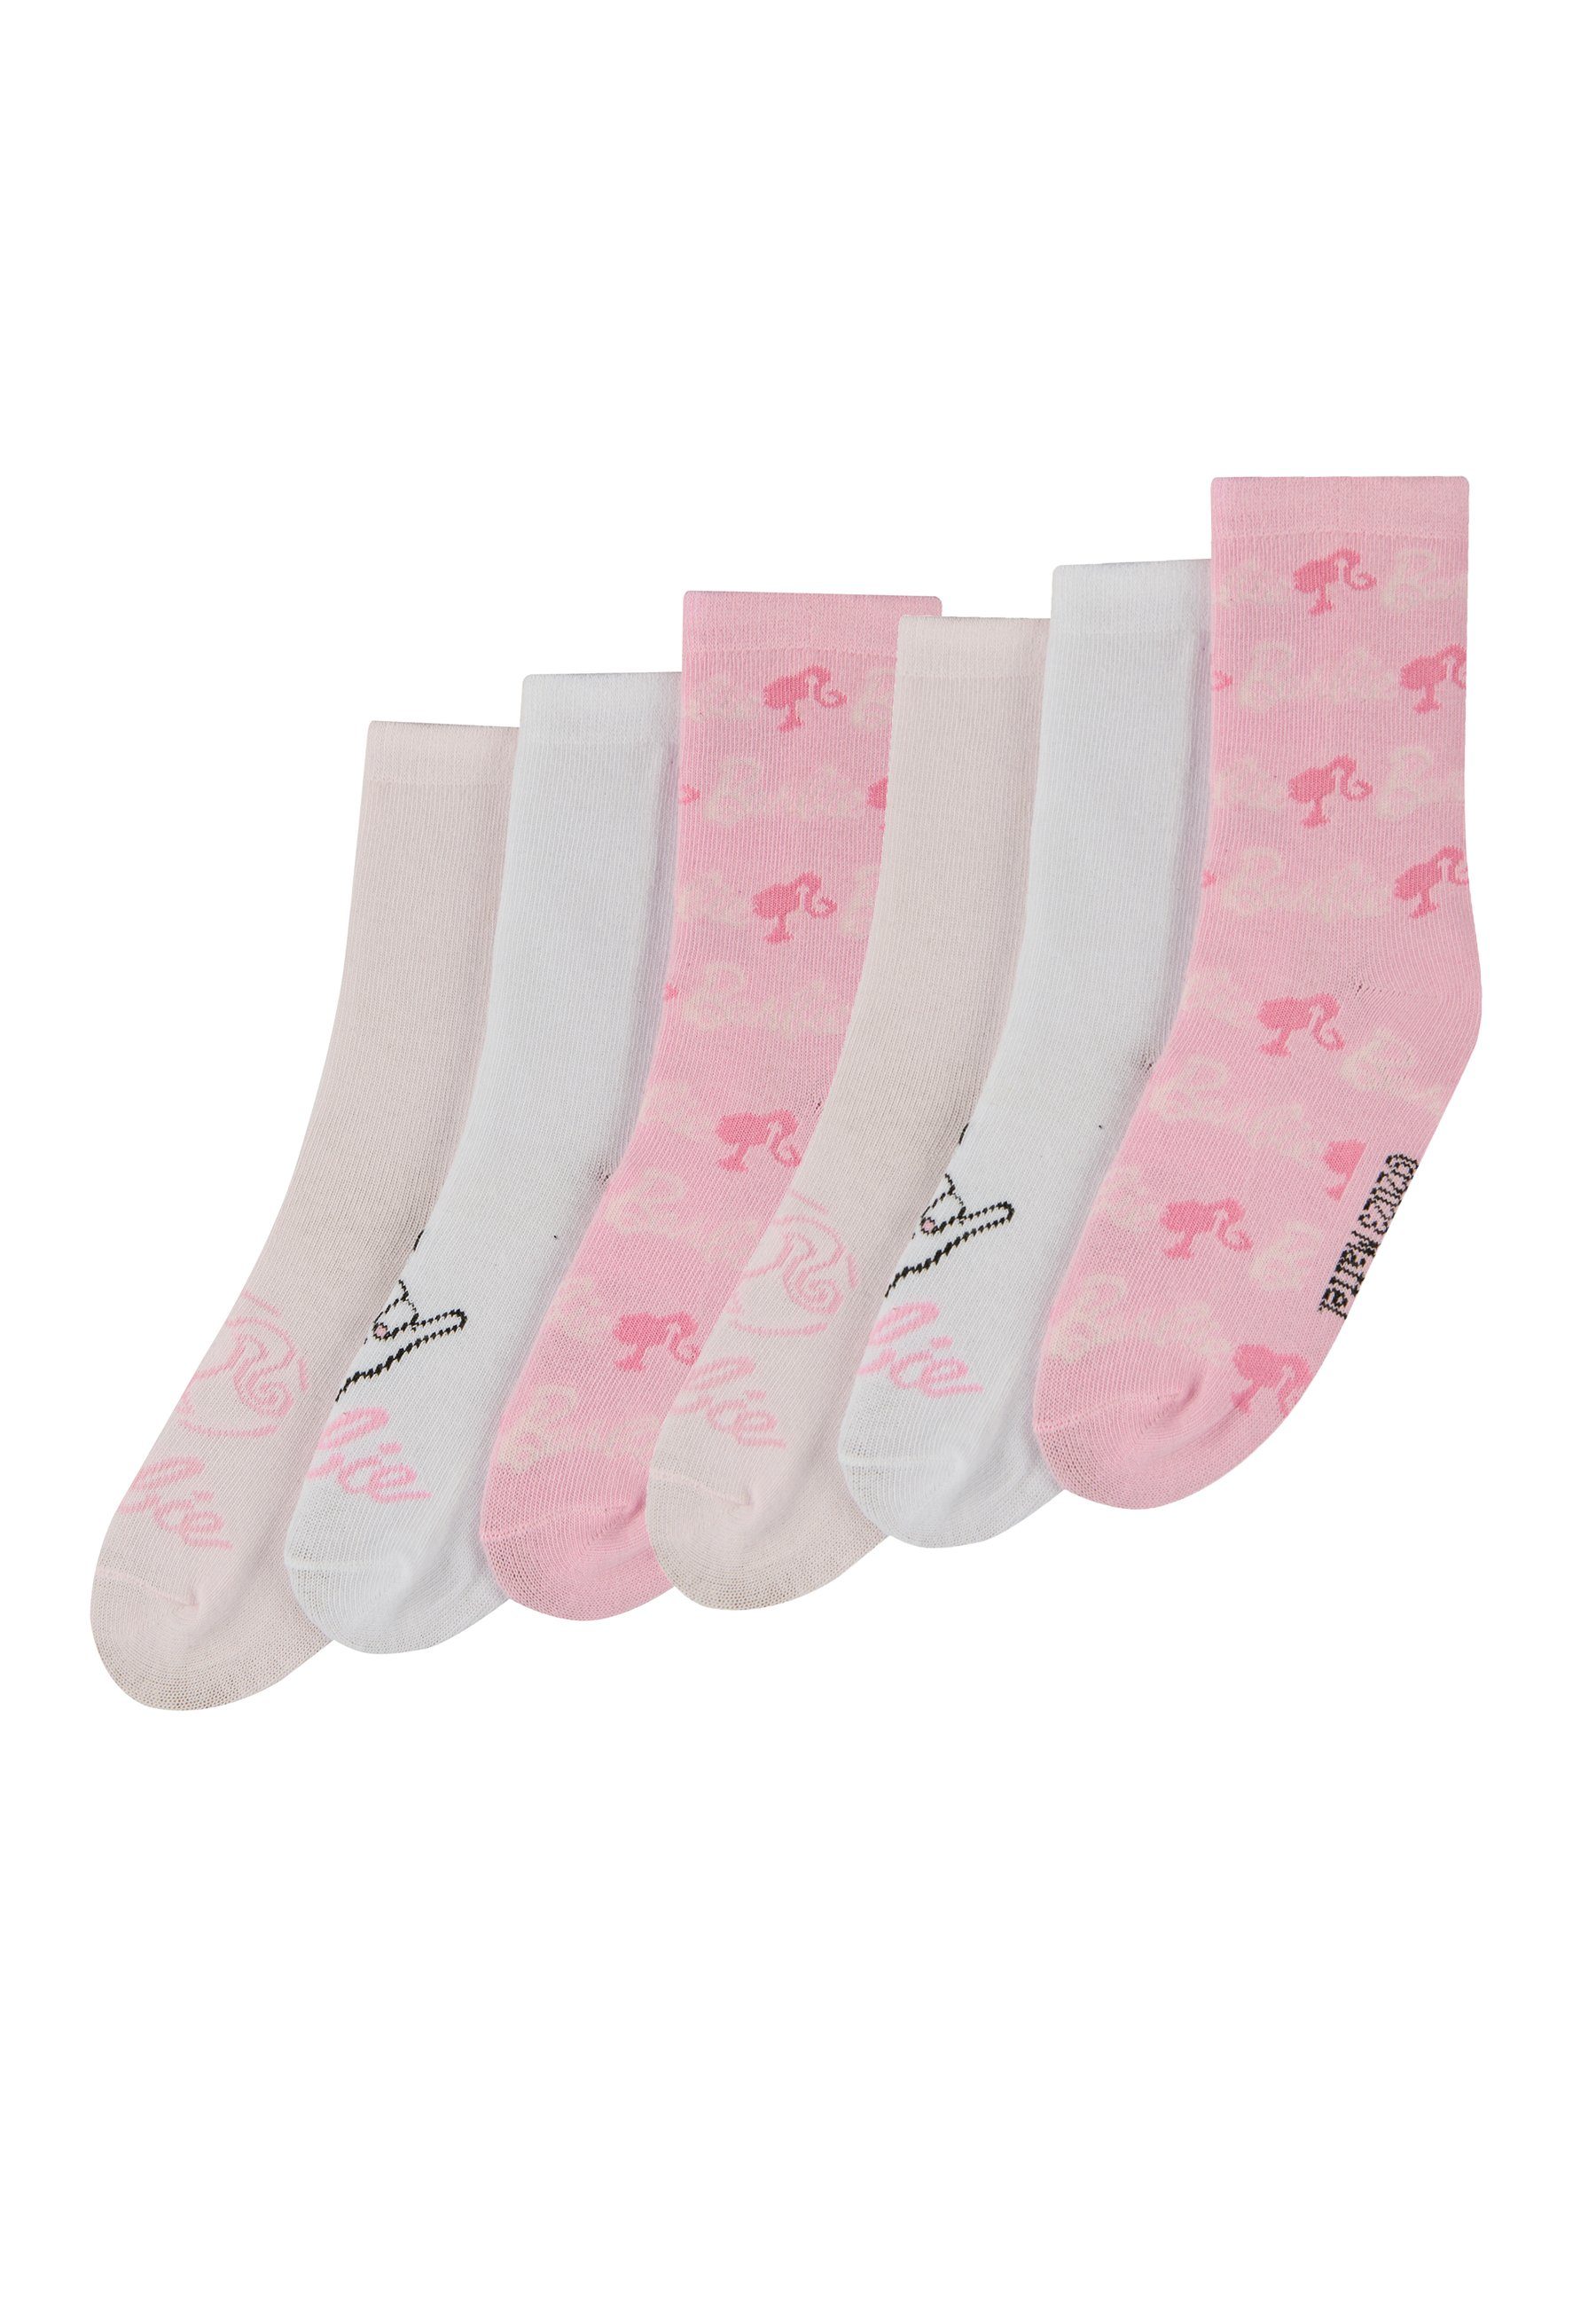 ONOMATO! Socken Barbie Kinder Mädchen 6er Socken Pack (6-Paar)